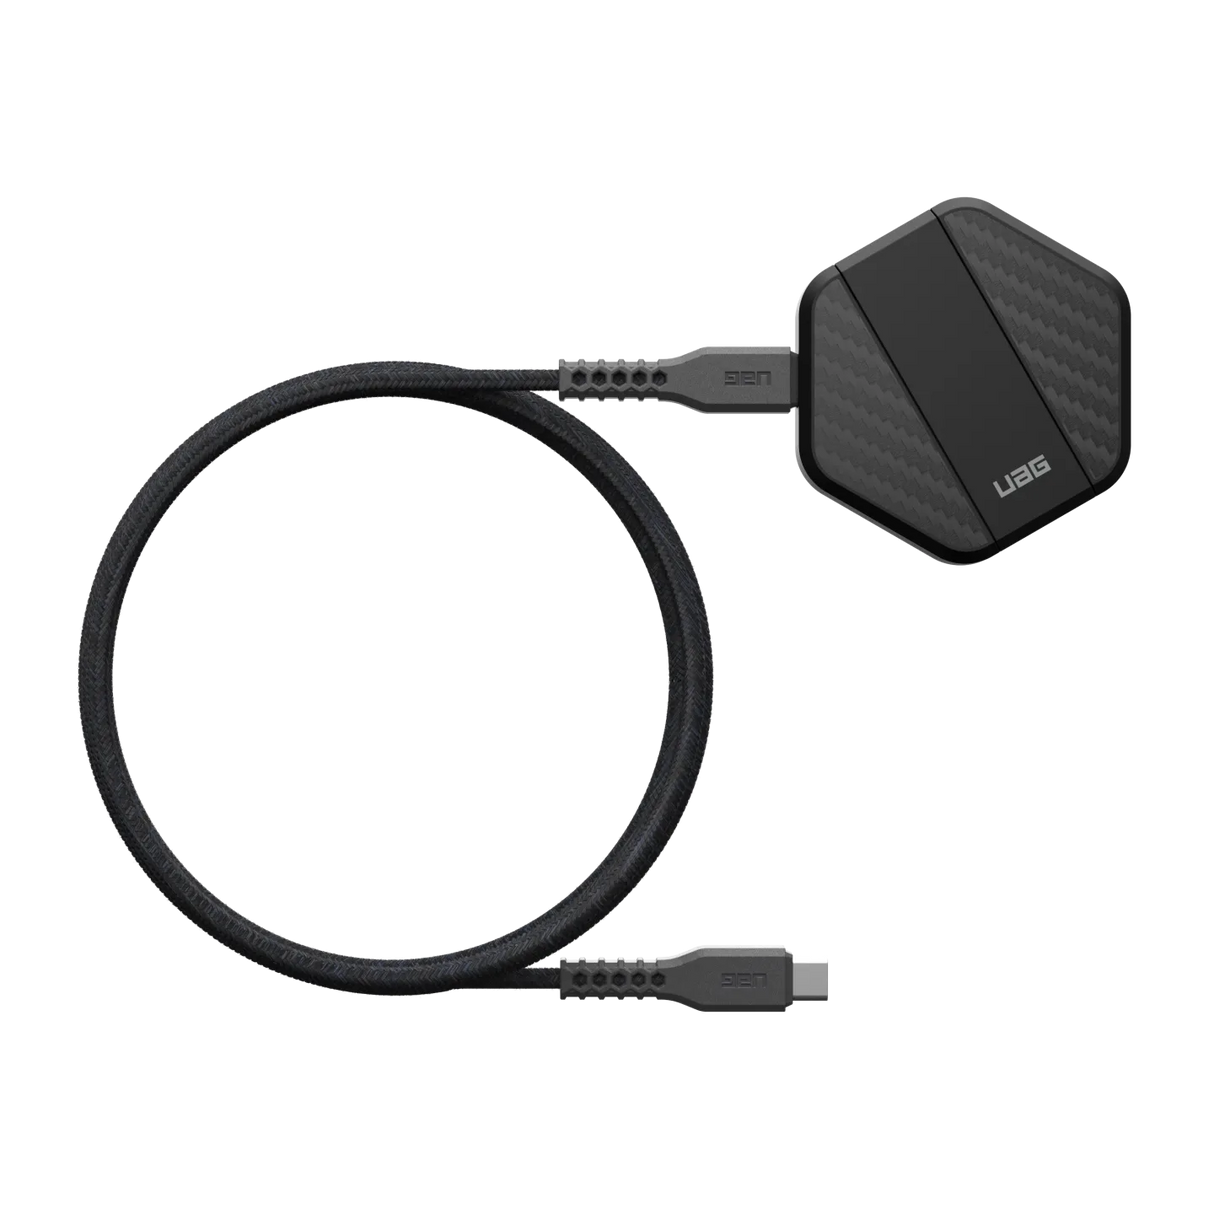 แท่นชาร์จไร้สายพร้อมขาตั้ง UAG รุ่น Portable Wireless Charging Pad – สี Carbon Fiber Black